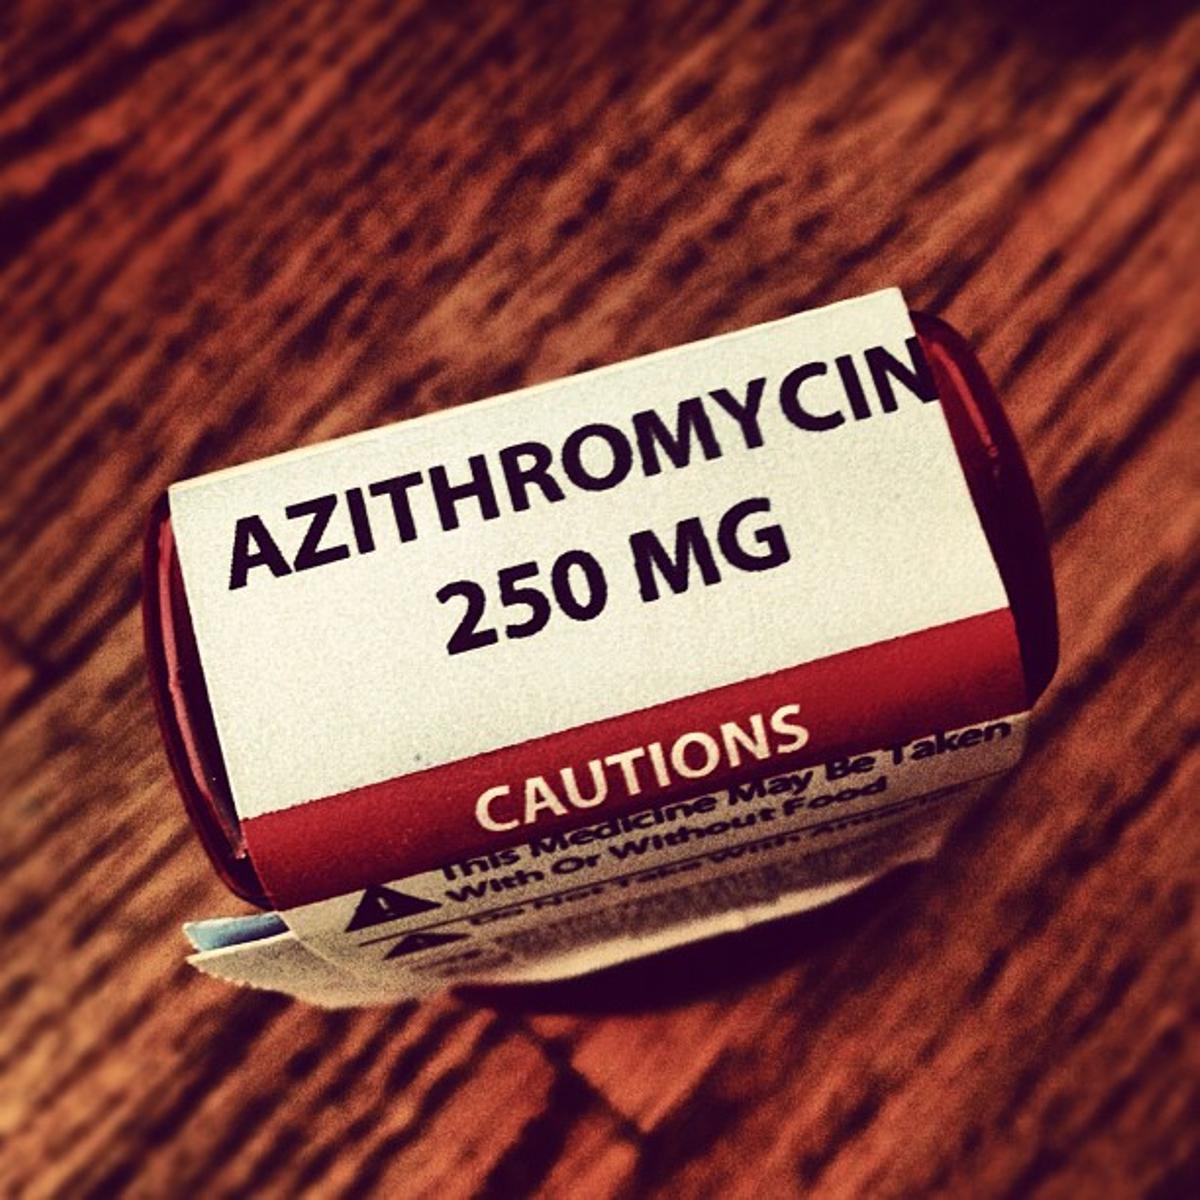 Antibioticos de azitromicina, unos de los más utilizados en España